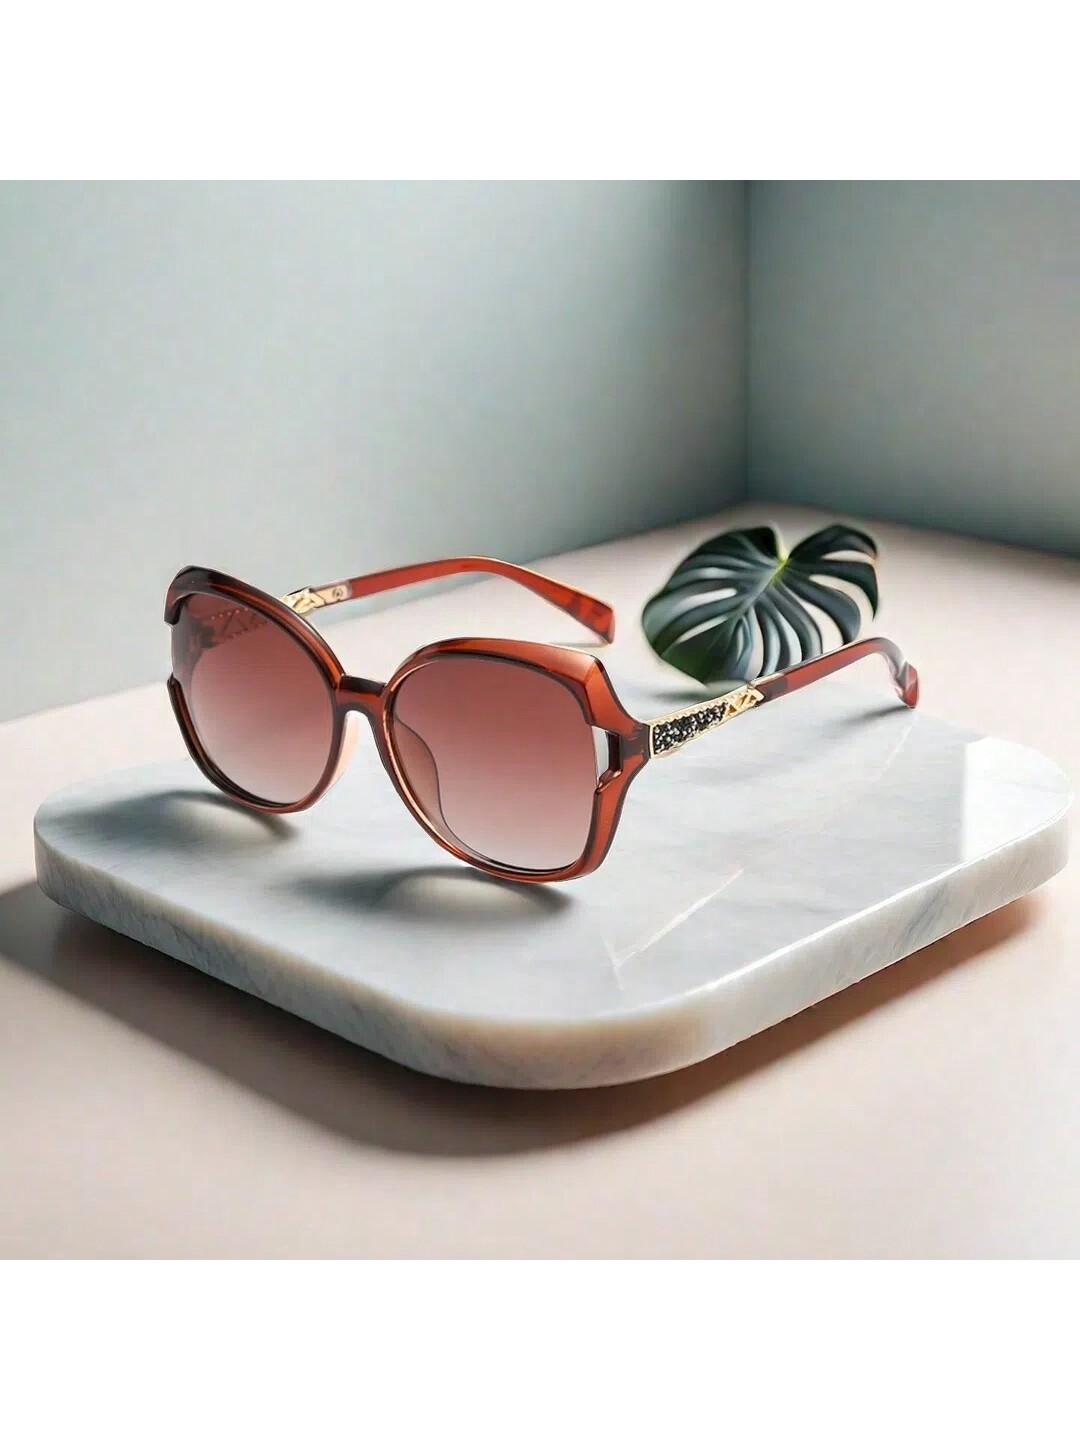 1 шт. новые модные поляризованные солнцезащитные очки для женщин с защитой от УФ-лучей фотографии